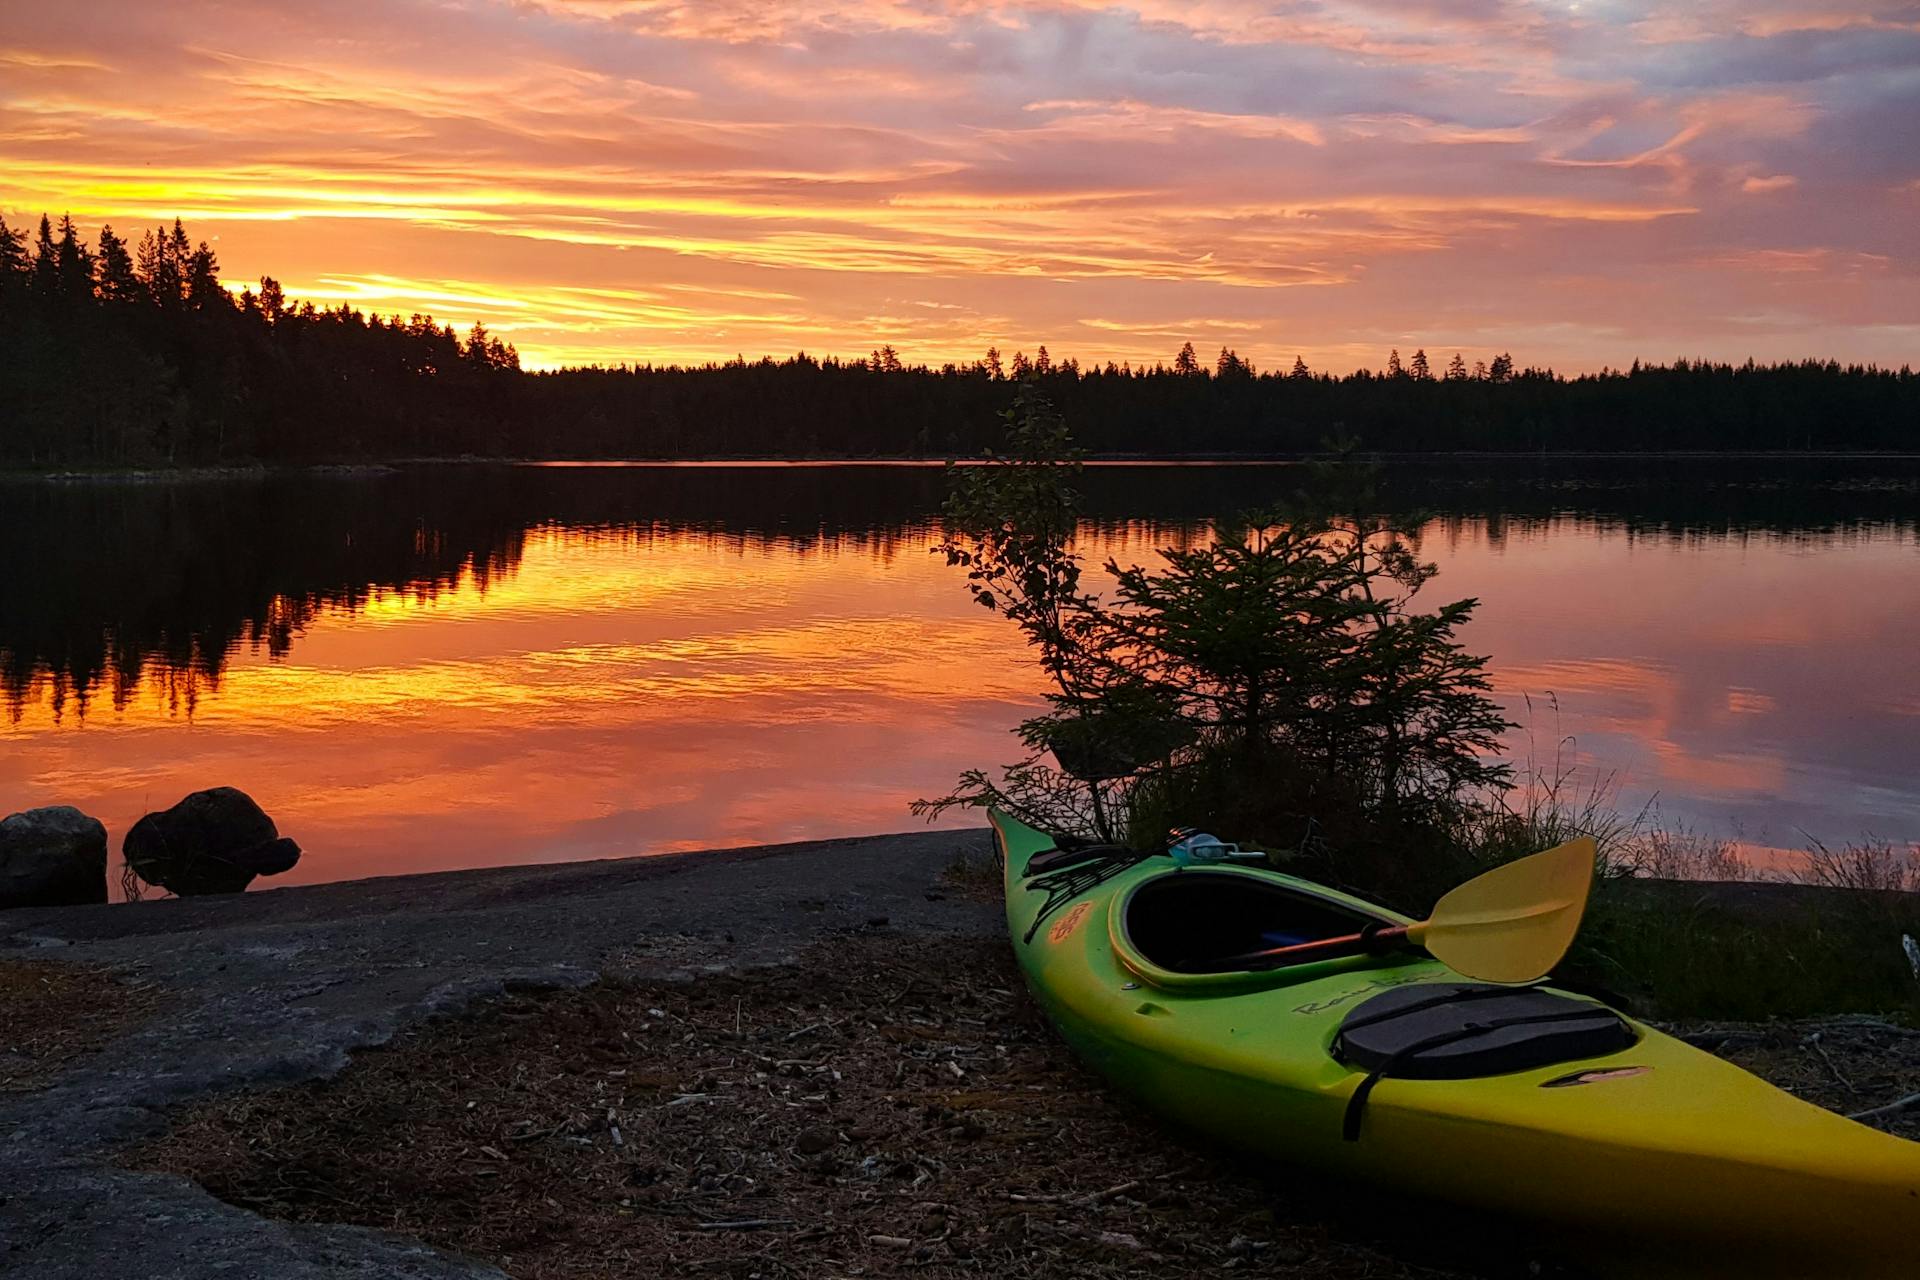 El kayak yace en la orilla de un lago durante una hermosa puesta de sol en la reserva natural de Malingsbo-Kloten en Suecia.